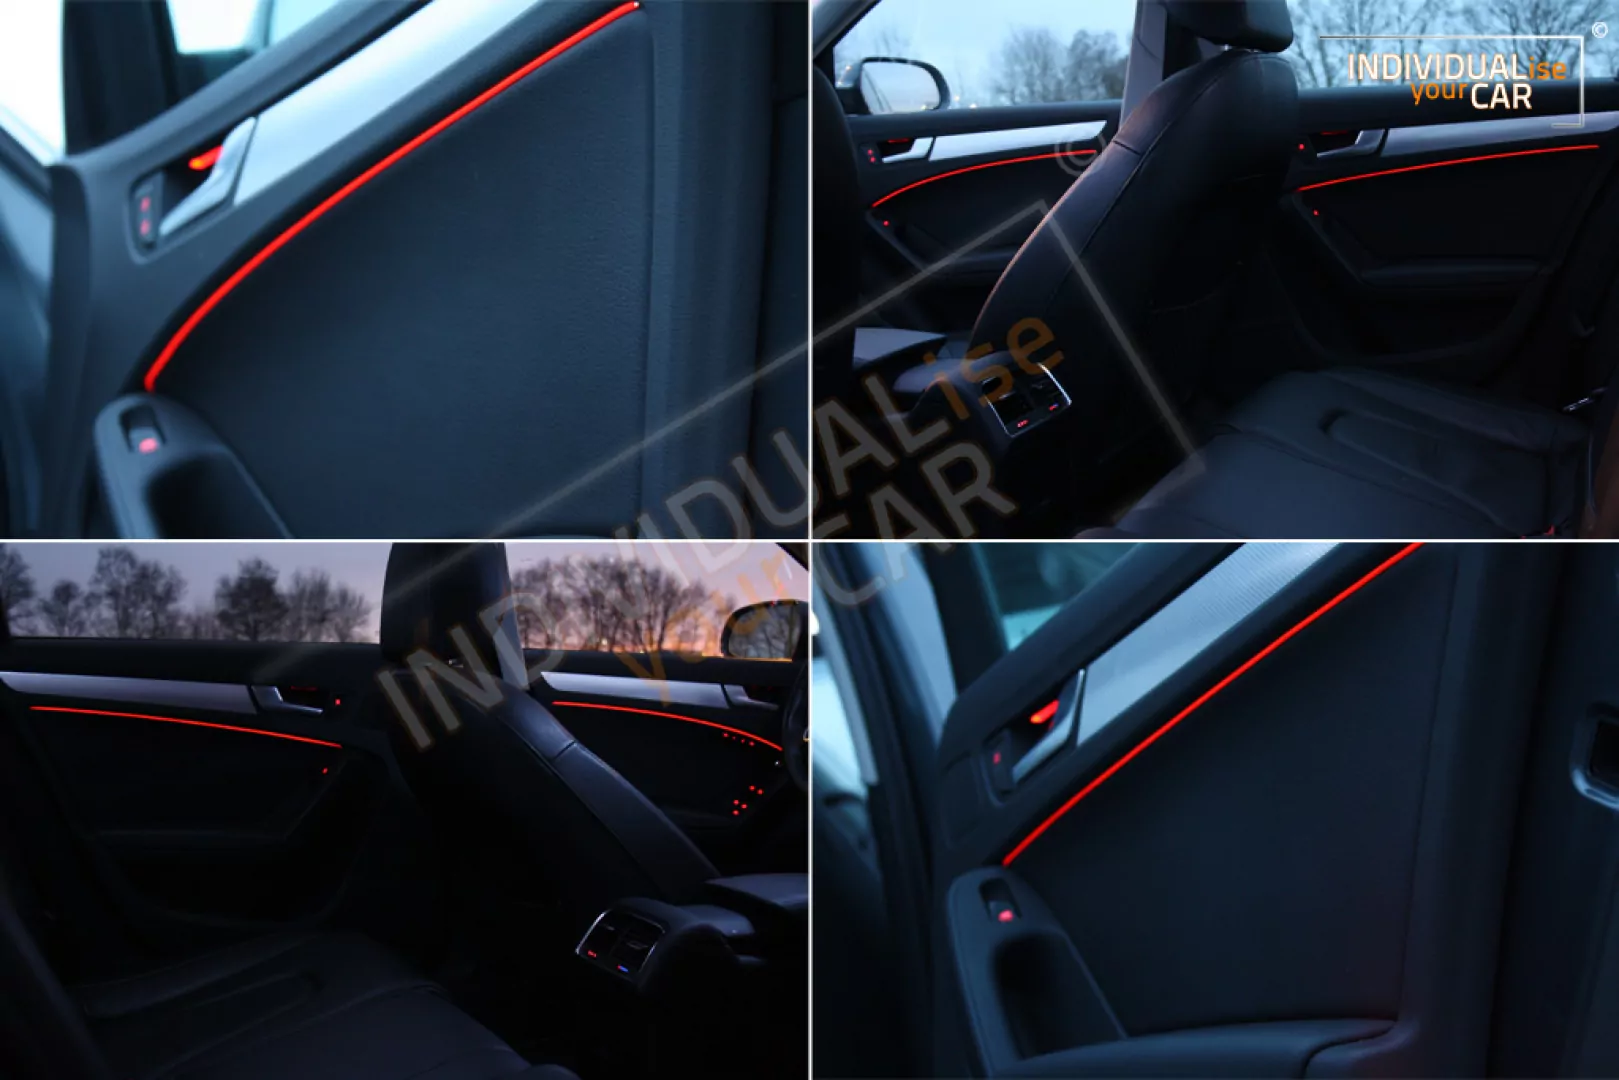 EL Ambiente Lichtleiste Ambientebeleuchtung für Audi A4 B8 - Türen